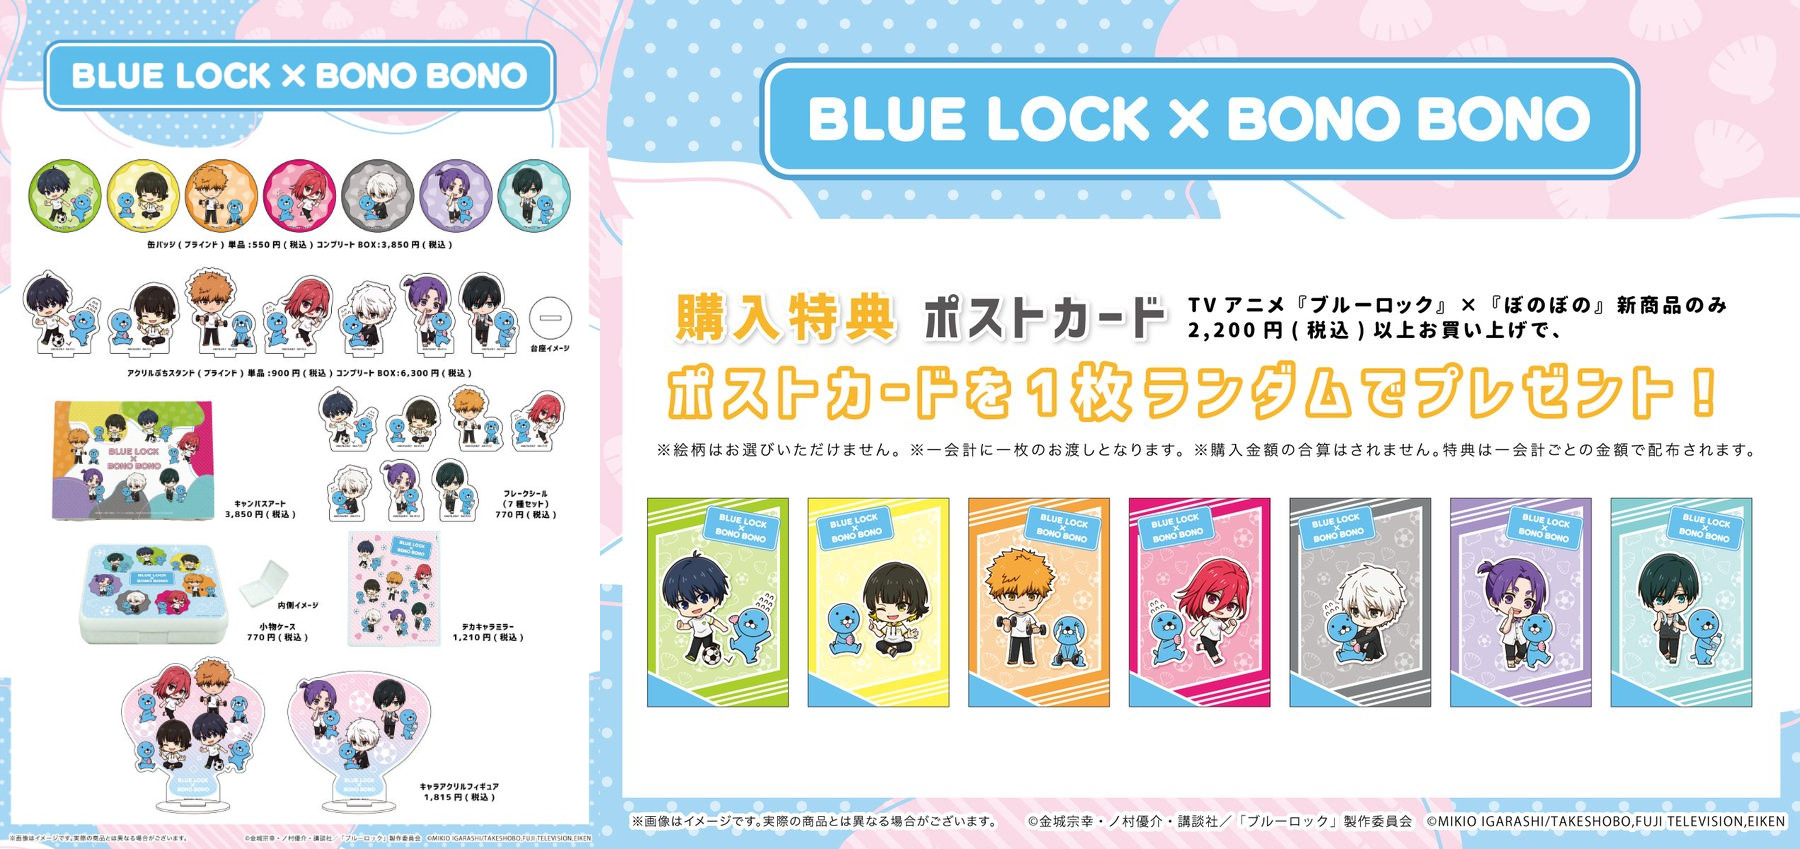 ブルーロック × ぼのぼの ポップアップストア in ツタヤ 7月8日より開催!